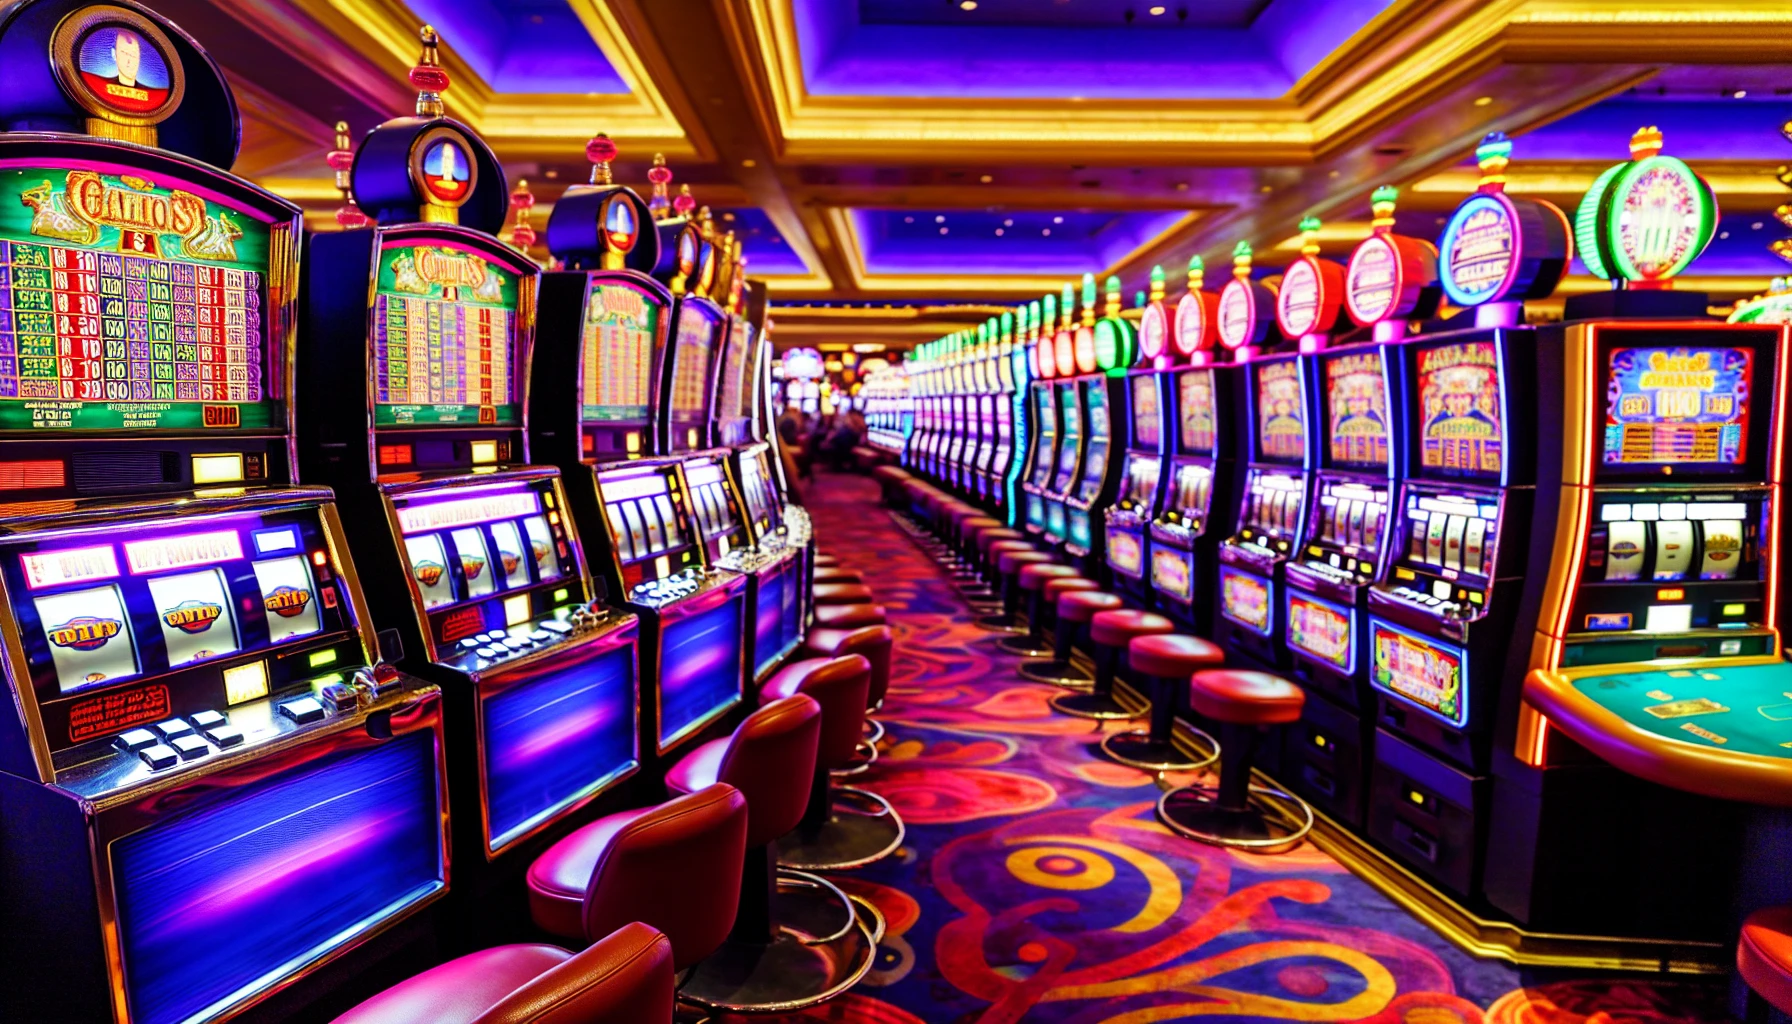 Máquinas tragaperras clásicas en un casino